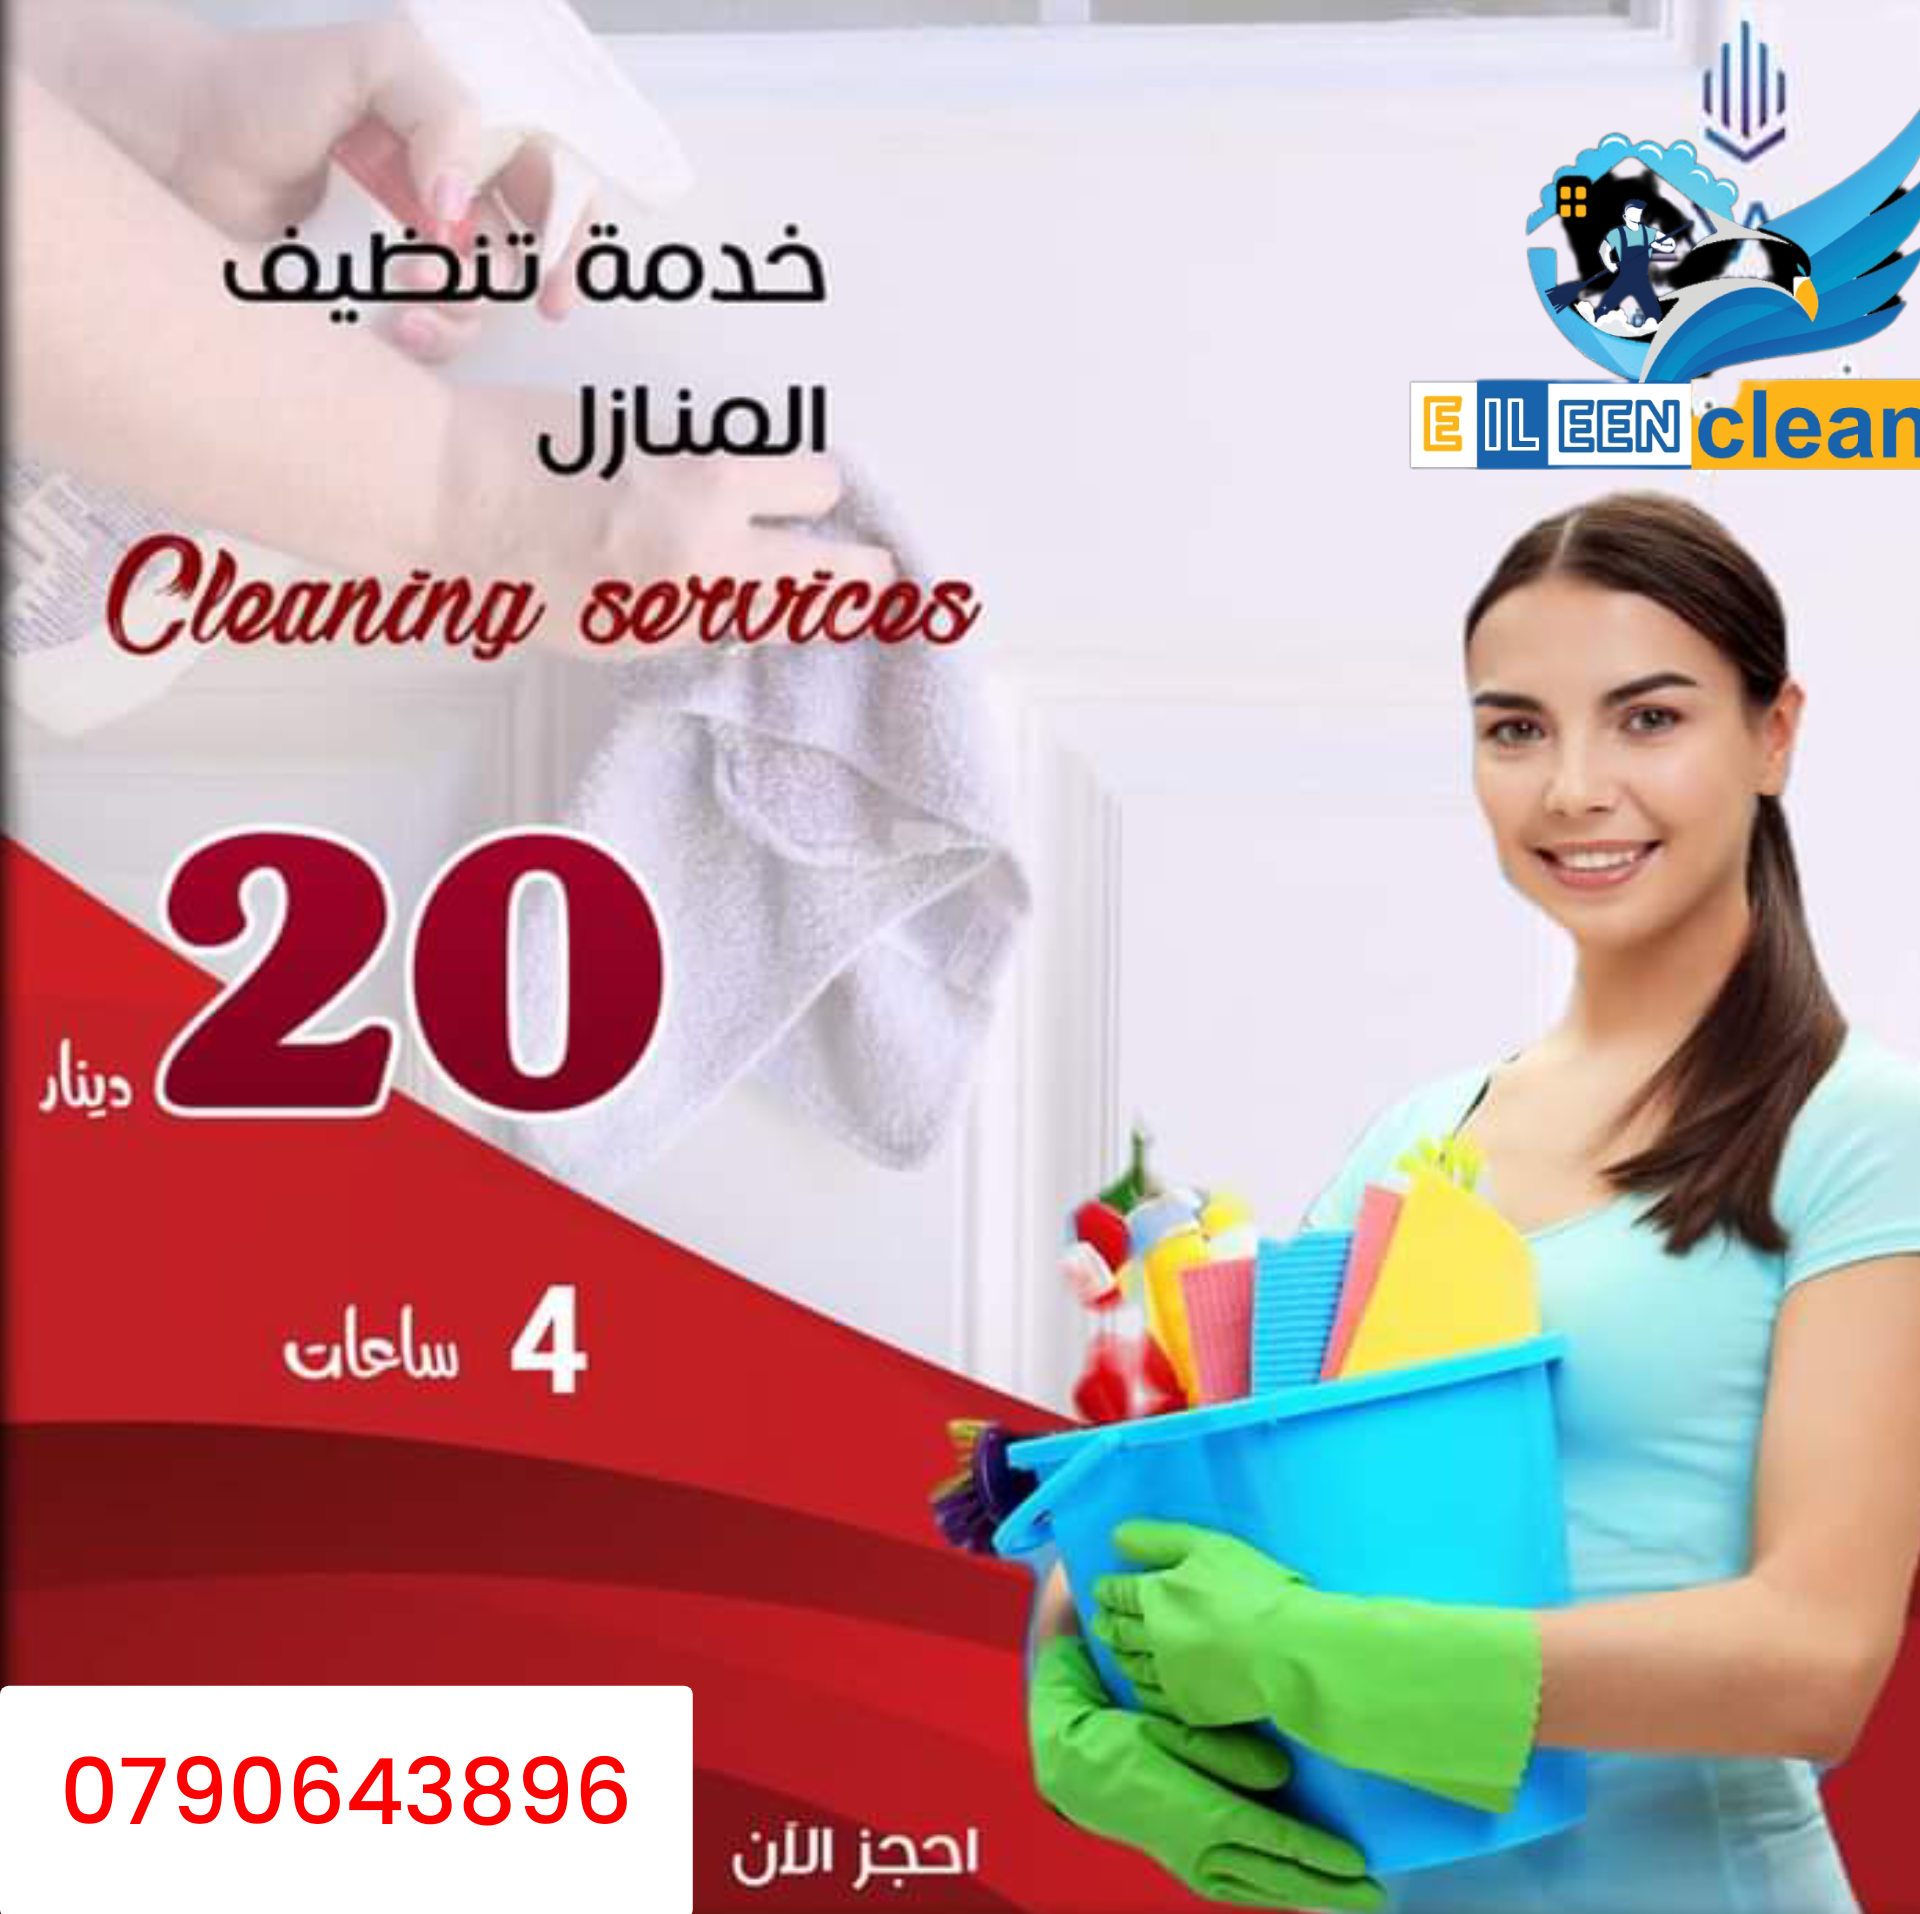 تنظيف يومي بالساعة منازل ومكاتب وفلل وعيادات وحدائق ٤ساعات ٢٠ دينار شامل مواصلات